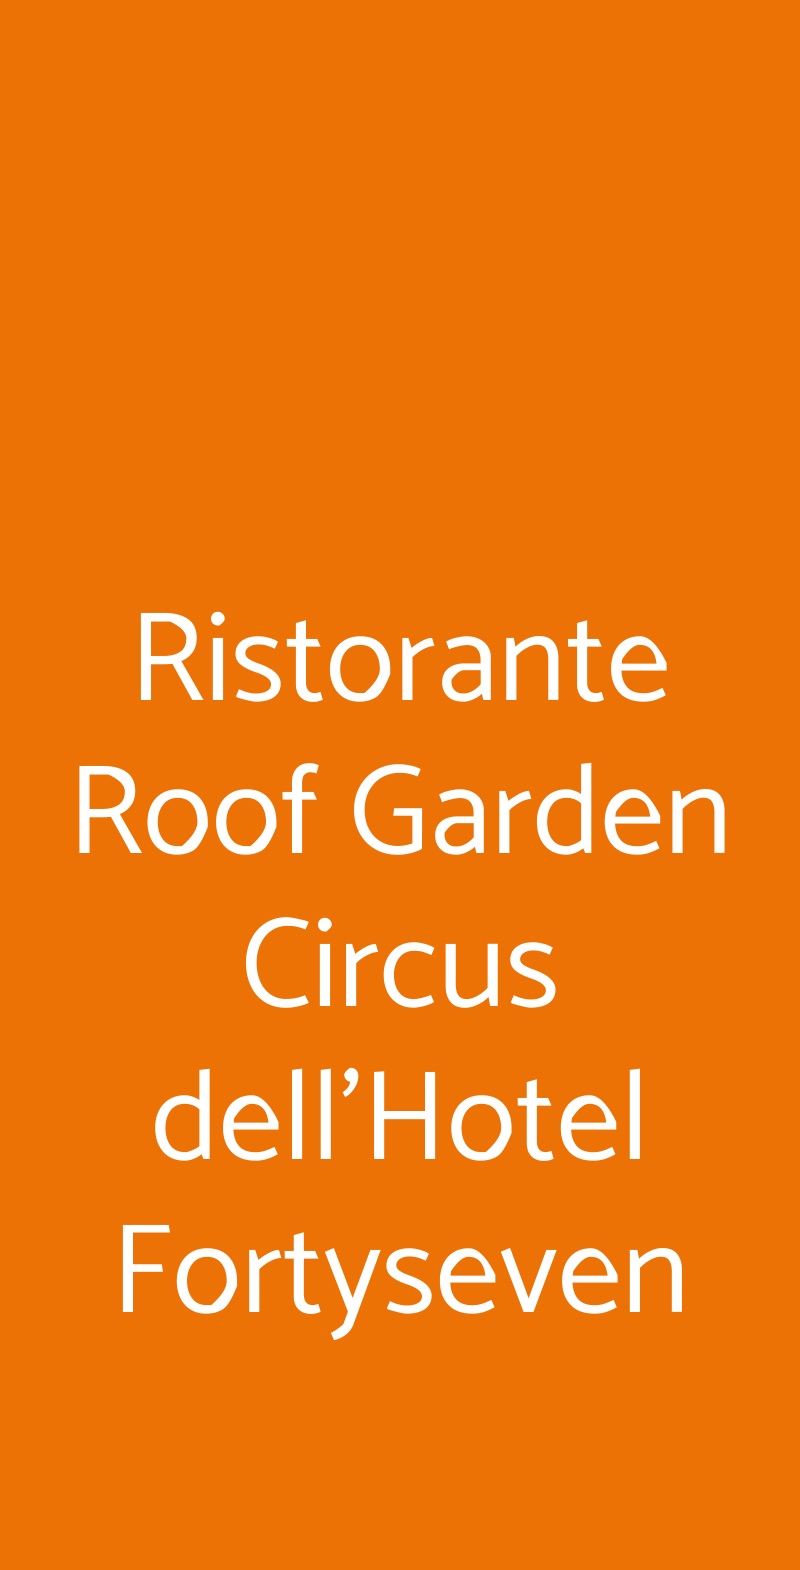 Ristorante Roof Garden Circus dell'Hotel Fortyseven Roma menù 1 pagina